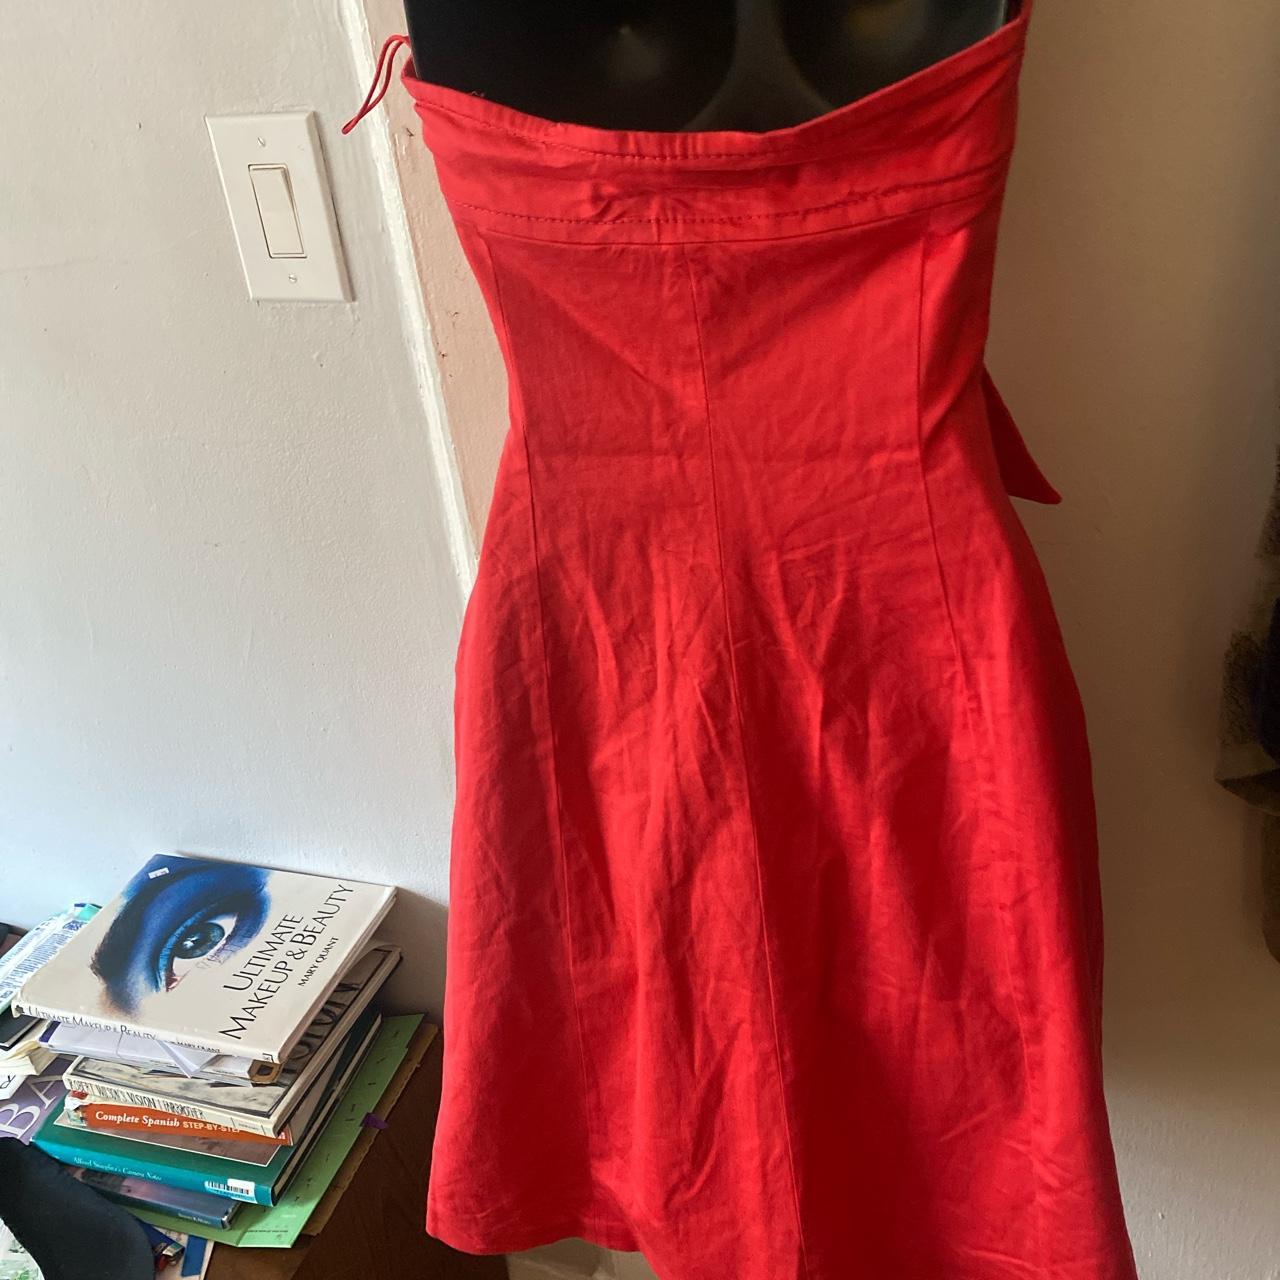 Moschino Cheap & Chic Women's Red Dress (3)